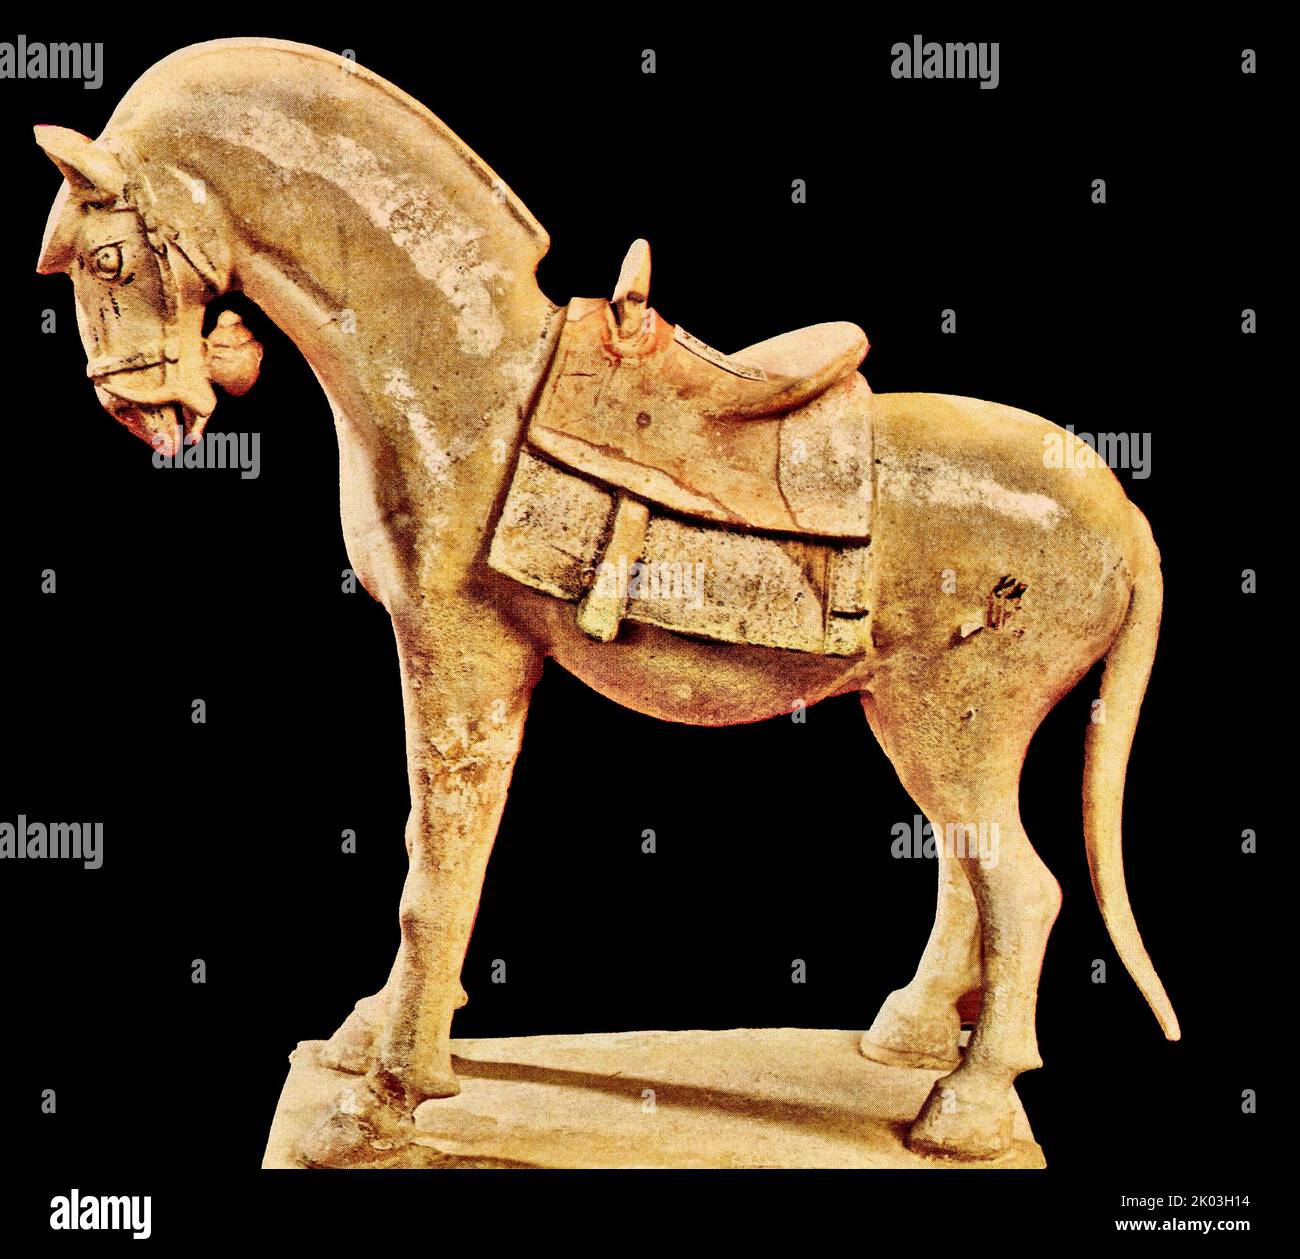 Die Figur eines Pferdes aus der Sui- oder Tang-Dynastie steht auf einem leeren Magen, steht auf einer rechteckigen Plattform, der Lehmboden ist weiß, der Körper des Pferdes ist mit einer hellgrünen Reisglasur bemalt und das Satteltuch ist rot bemalt. Der Kopf des Pferdes blickt nach unten, der Hals ist leicht gebeugt, und es ist in einer nach vorne schießenden Form. Die Vorderbeine sind nach vorne gestreckt und gerade, der Rücken ist leicht gebeugt. Der Mund des Pferdes ist mit einer Glocke geschmückt, und der Hals ist mit einer Glocke gebunden, und er hat eine gute Haltung. Stockfoto